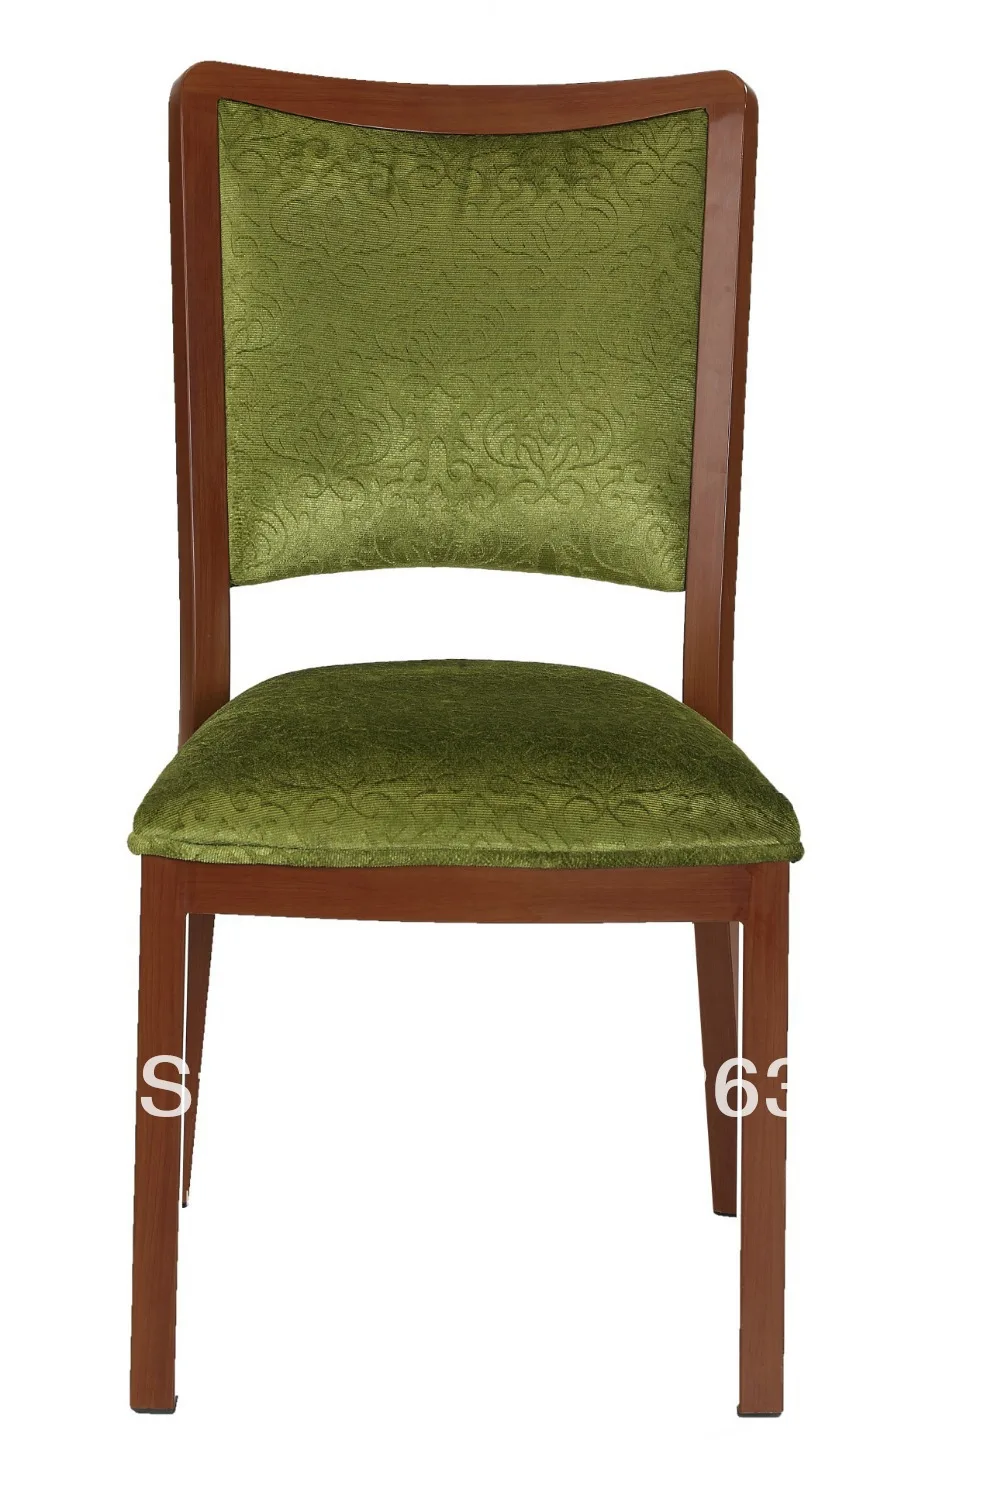 İstiflenebilir ahşap tahıl Alüminyum ziyafet sandalye, yüksek sürtünme direnci ile ağır kumaş, rahat